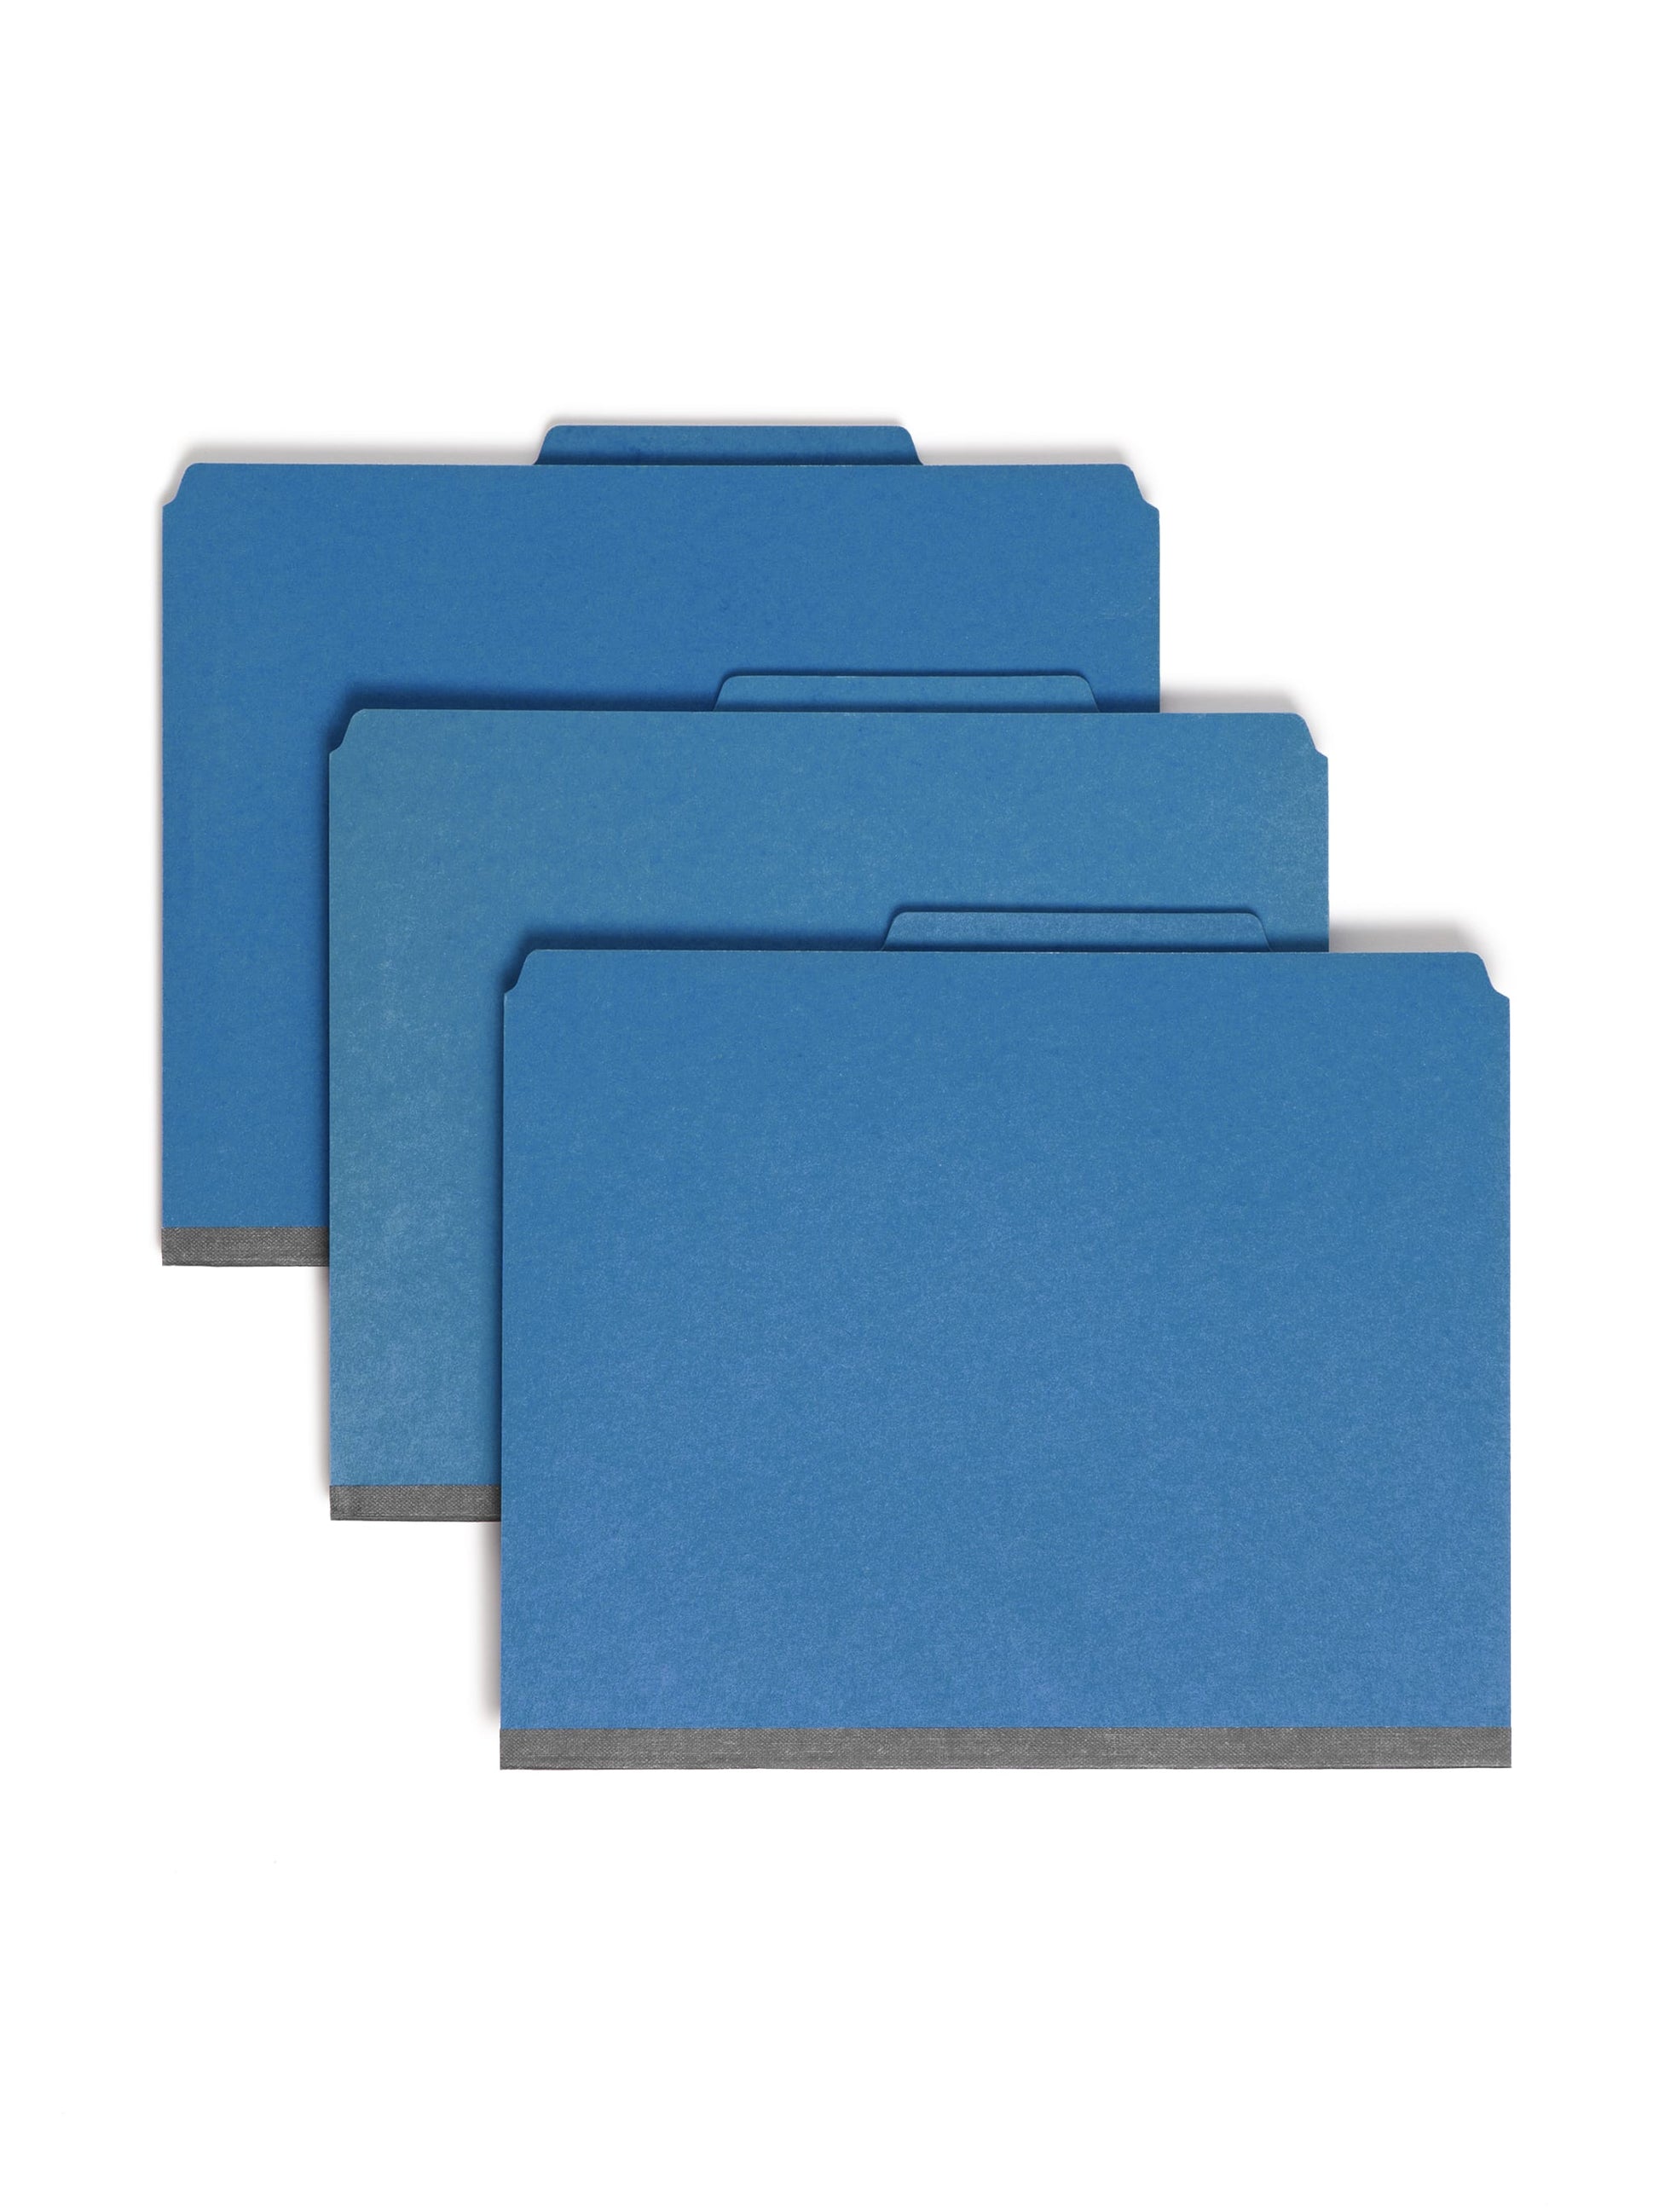 SafeSHIELD® Pressboard Classification File Folders, 1 Divider, 2 inch Expansion, Dark Blue Color, Letter Size, 